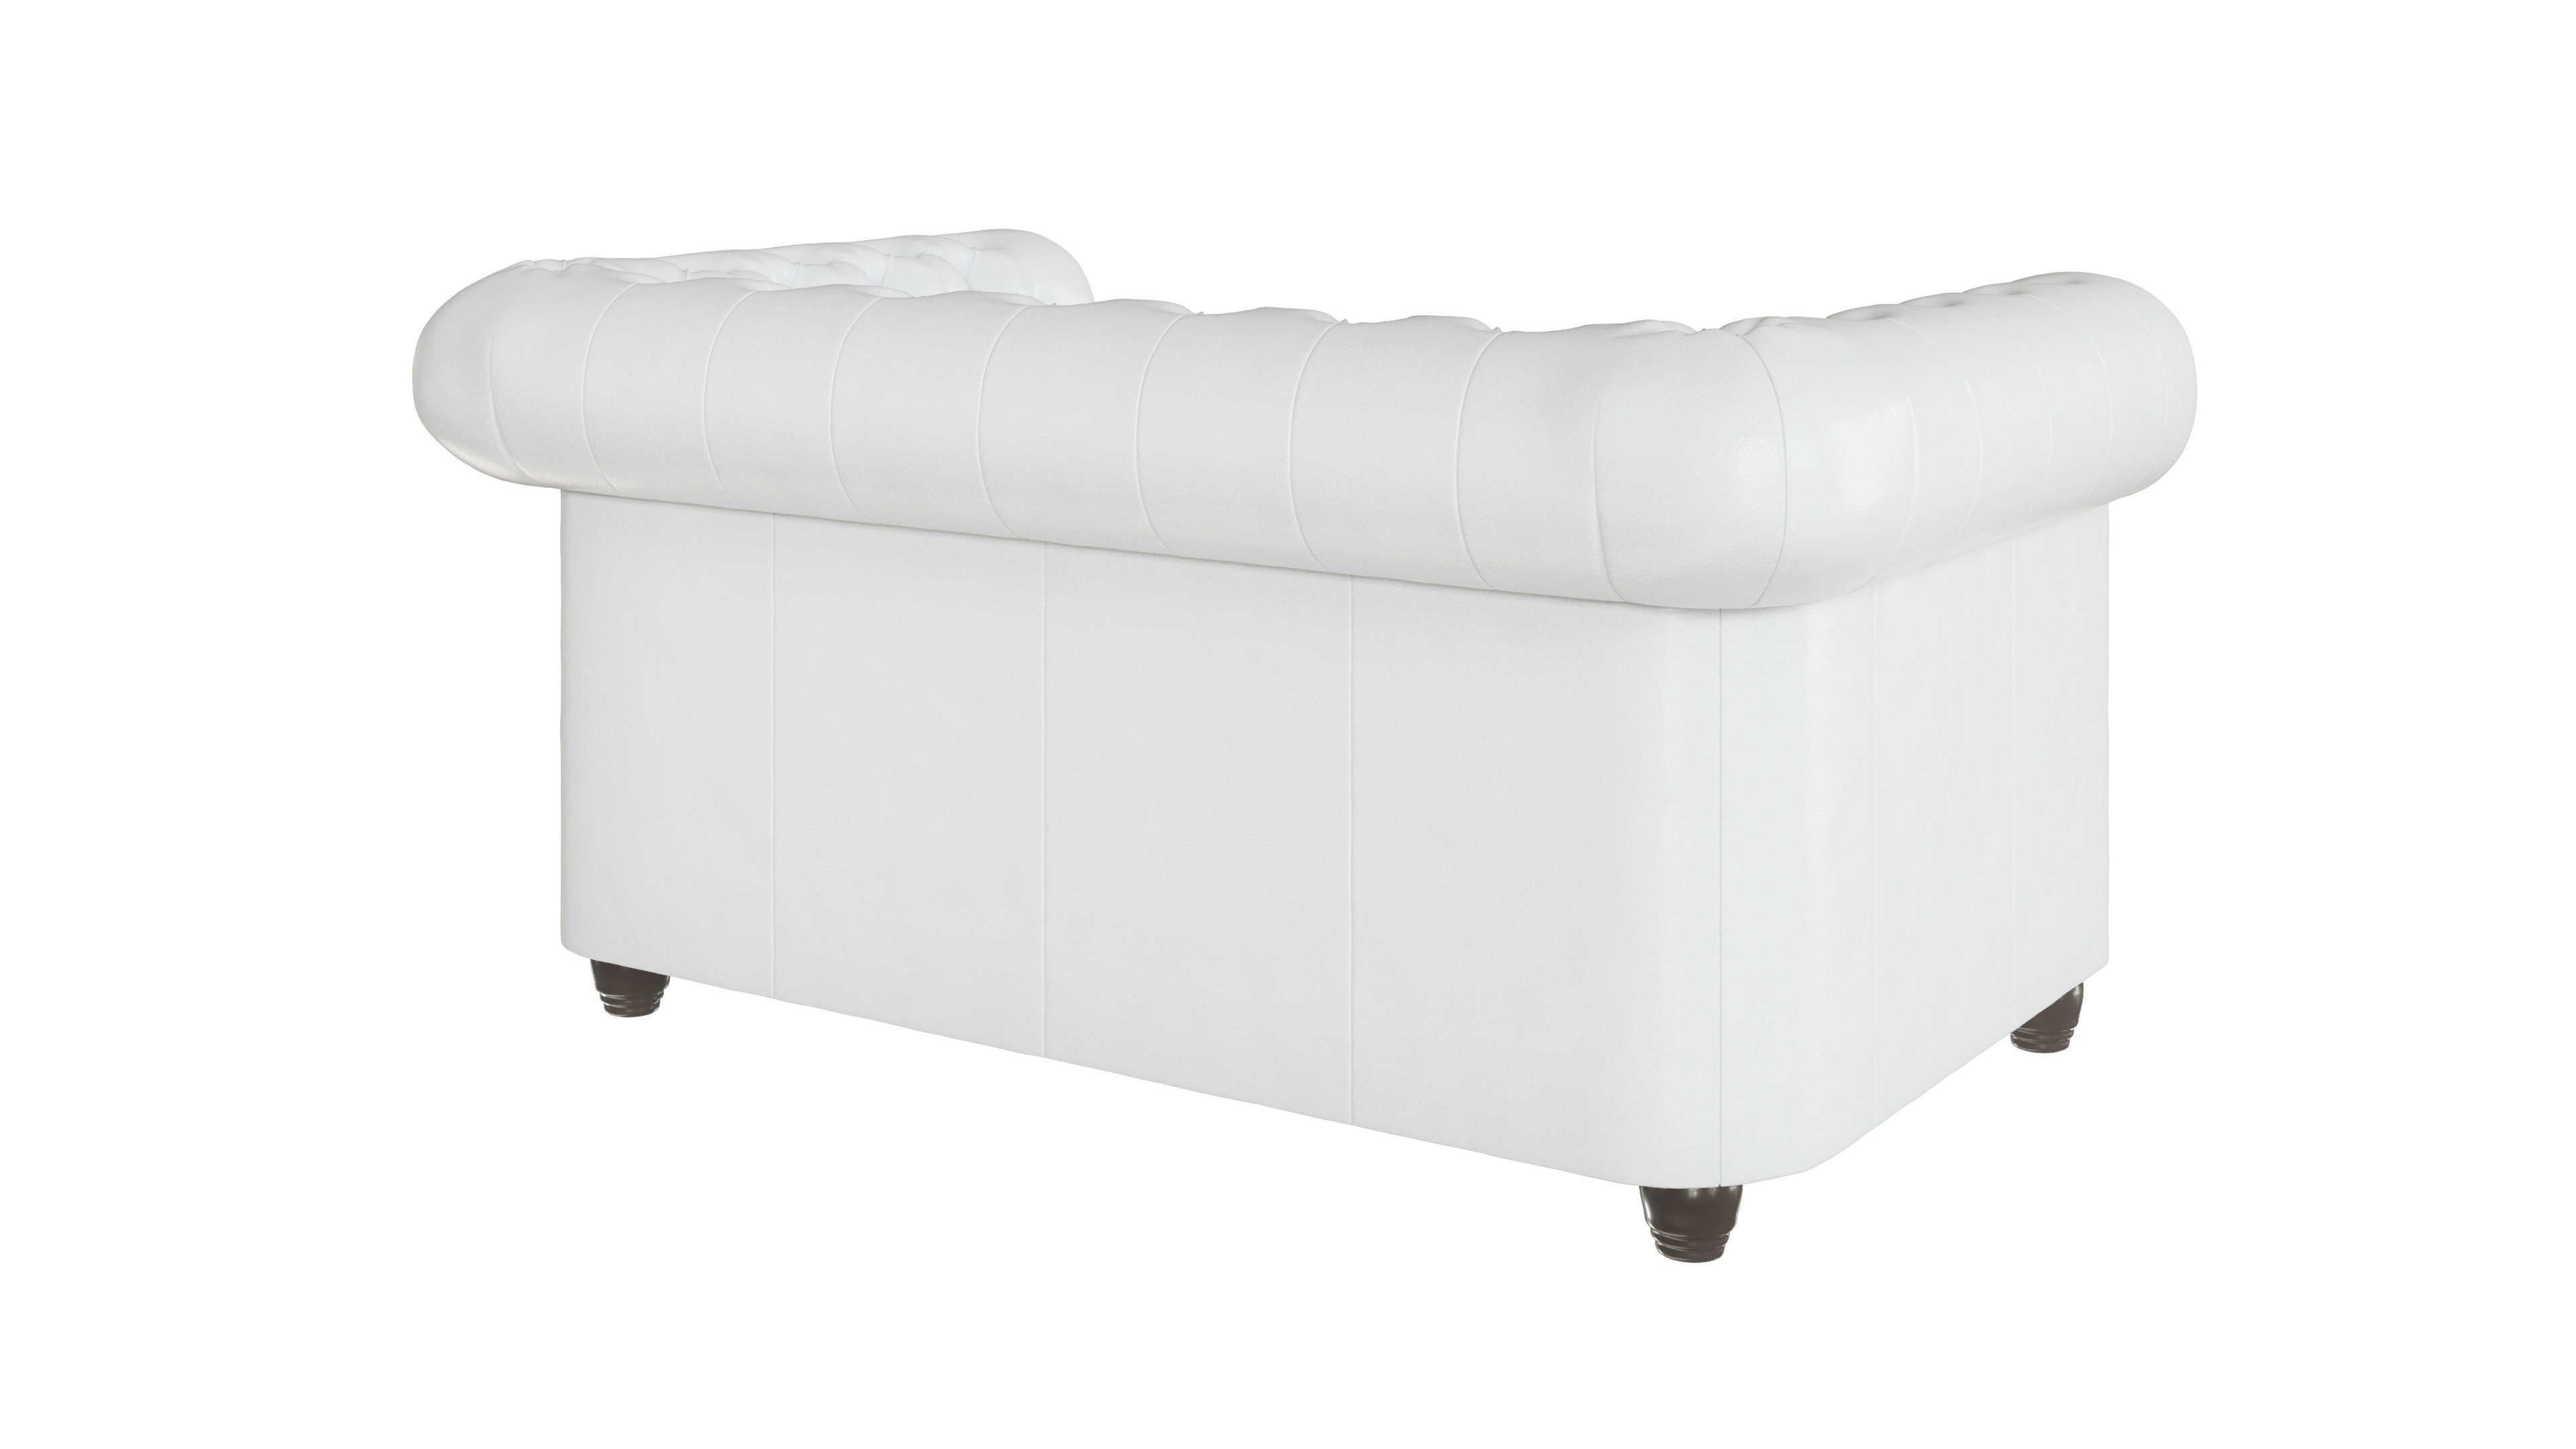 mit Jeff S-Style 2-Sitzer Wellenfederung Weiß Sofa, Möbel Chesterfield